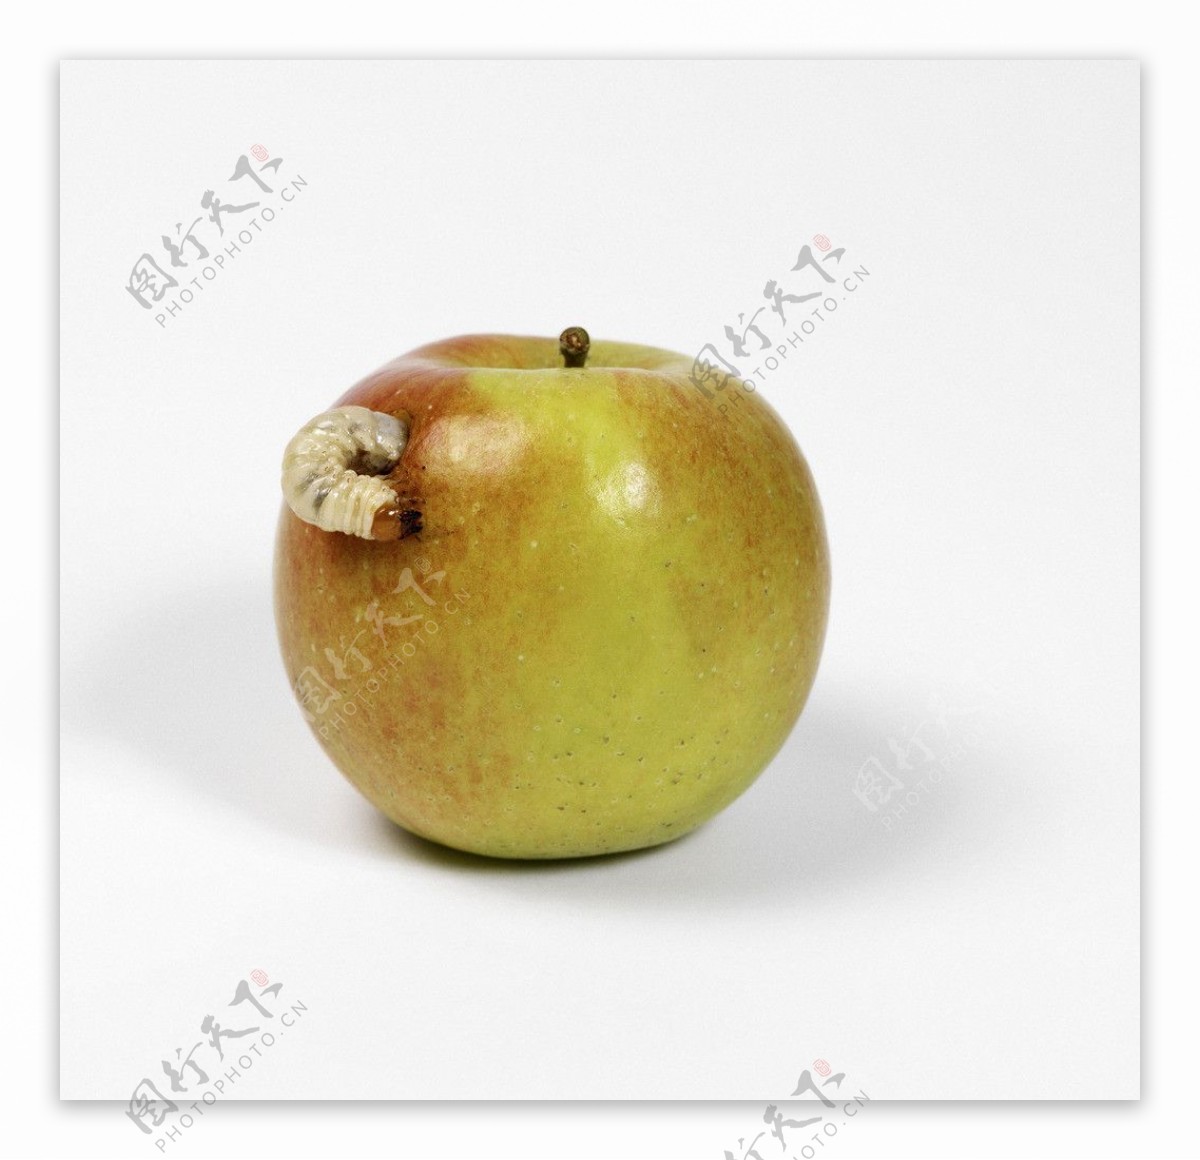 苹果烂苹果图片